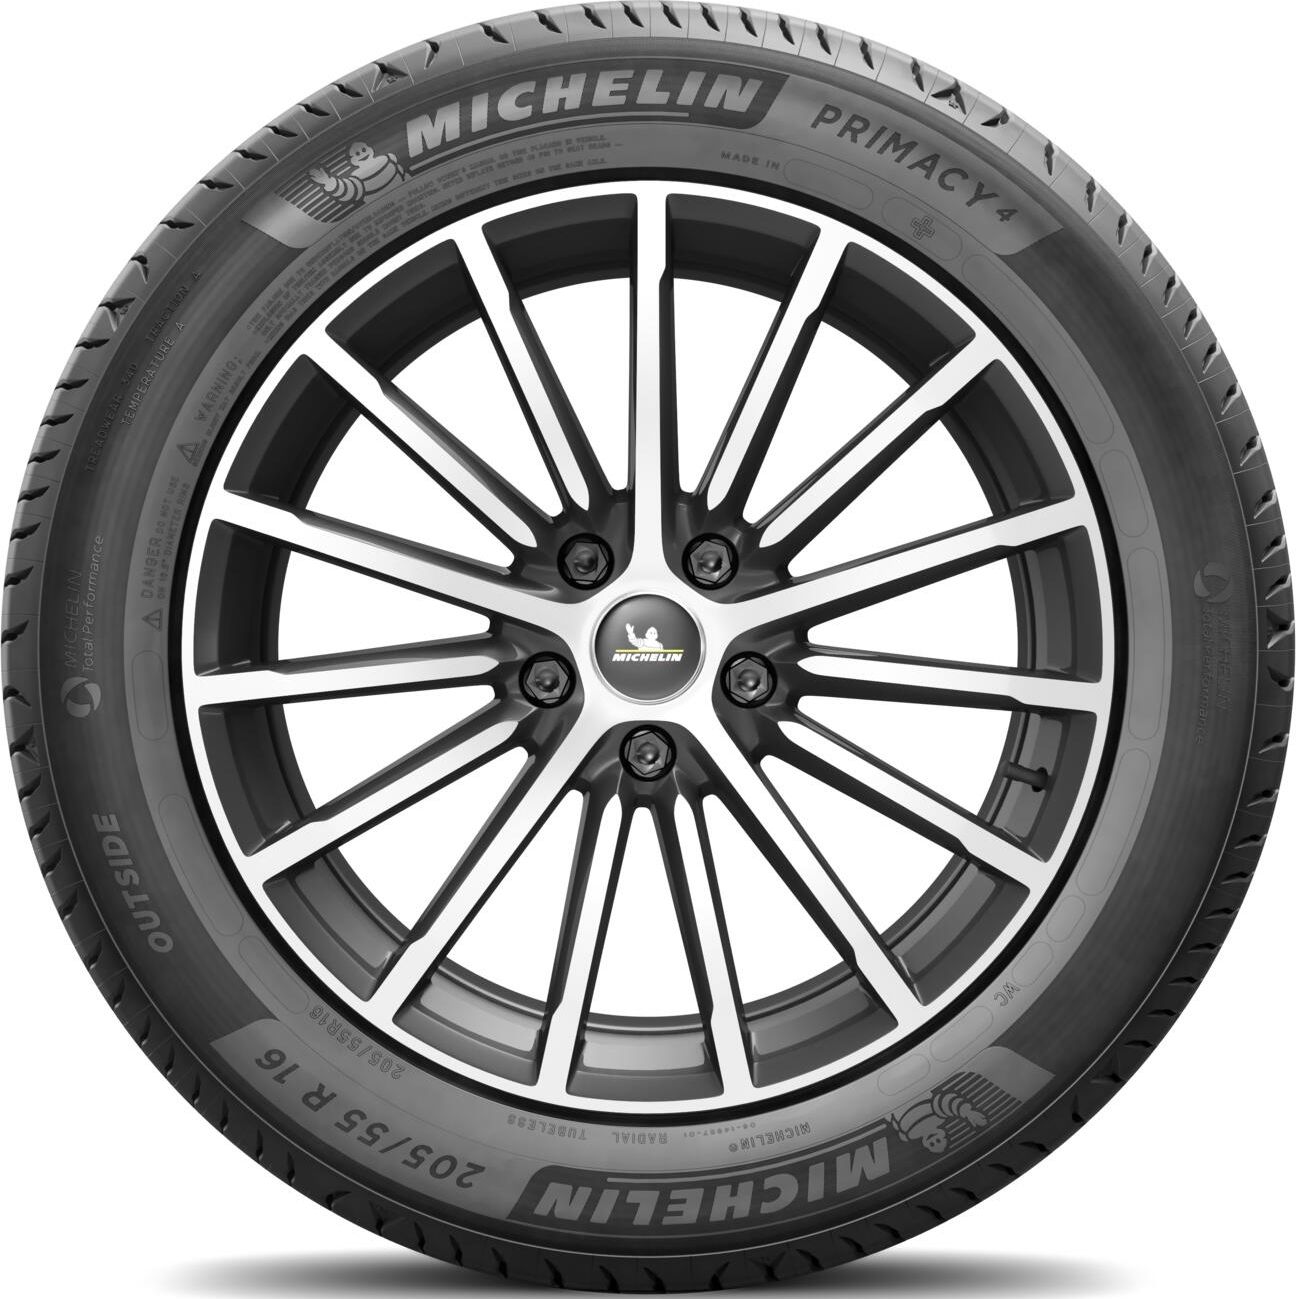 Michelin Primacy Preisvergleich 245/45 (2024) | ab Deutschland 141,99 100 Geizhals € R18 XL 4